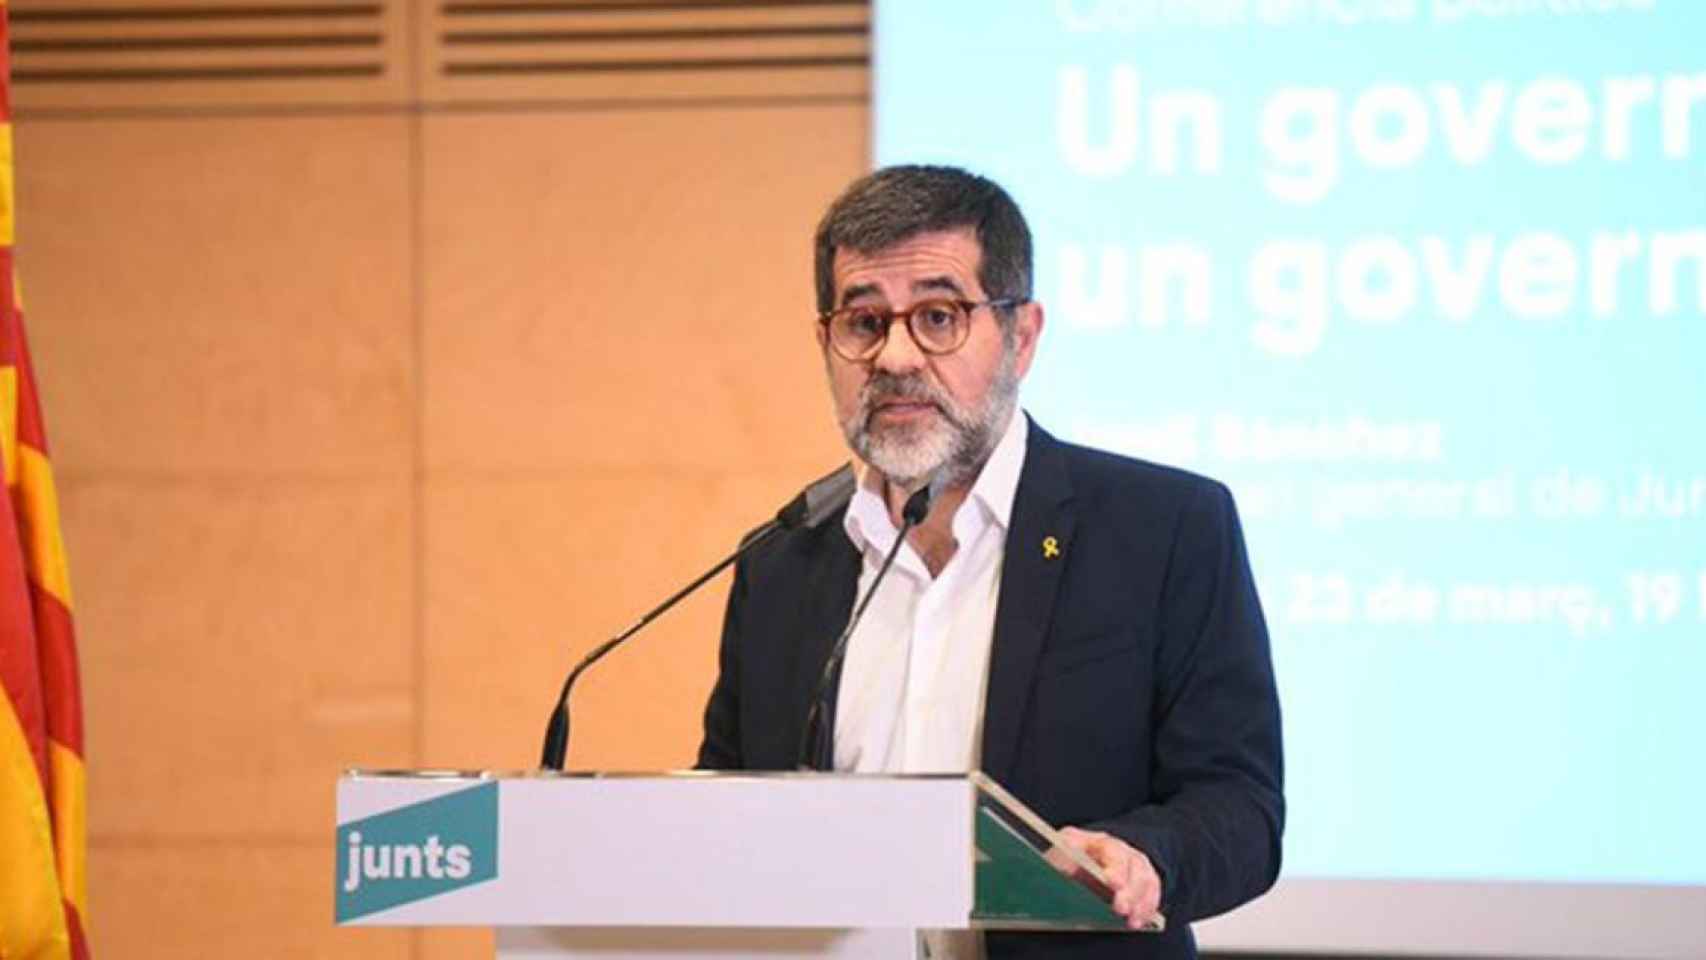 El secretario general de Junts per Catalunya, Jordi Sànchez, durante una conferencia / JXCAT